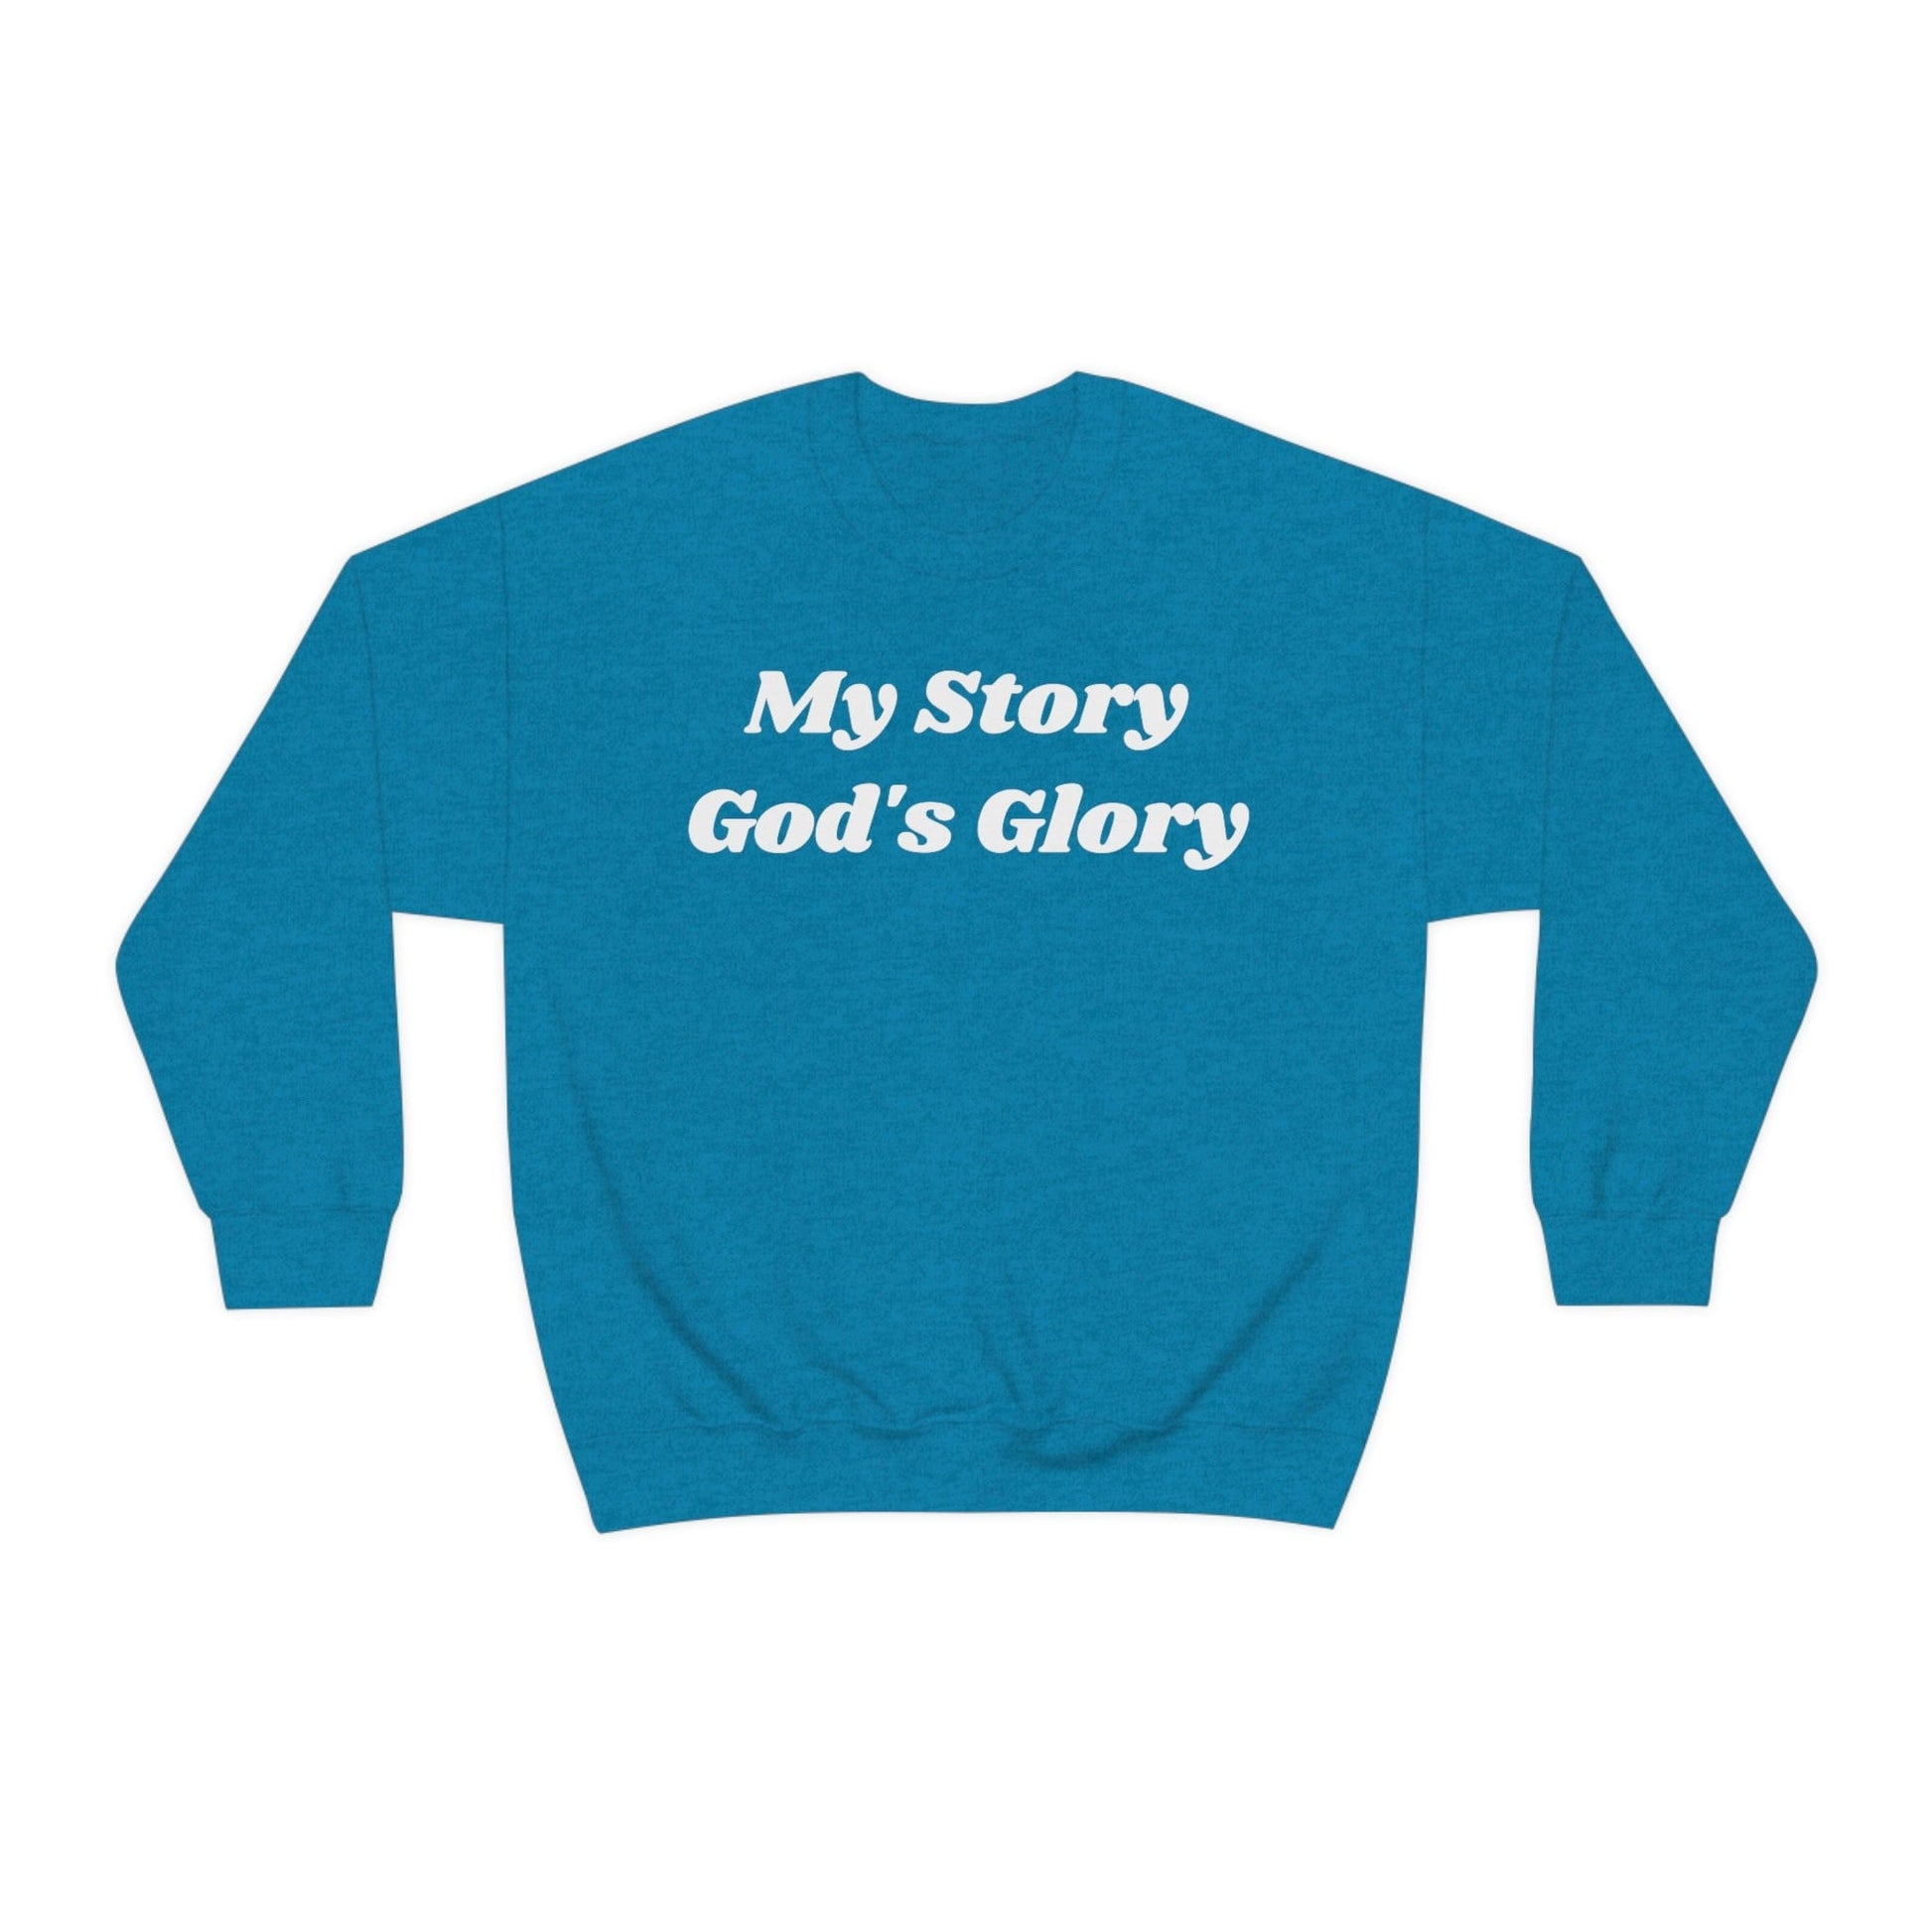 God's Glory Sweatshirt, Christian Apparel, Faith Apparel